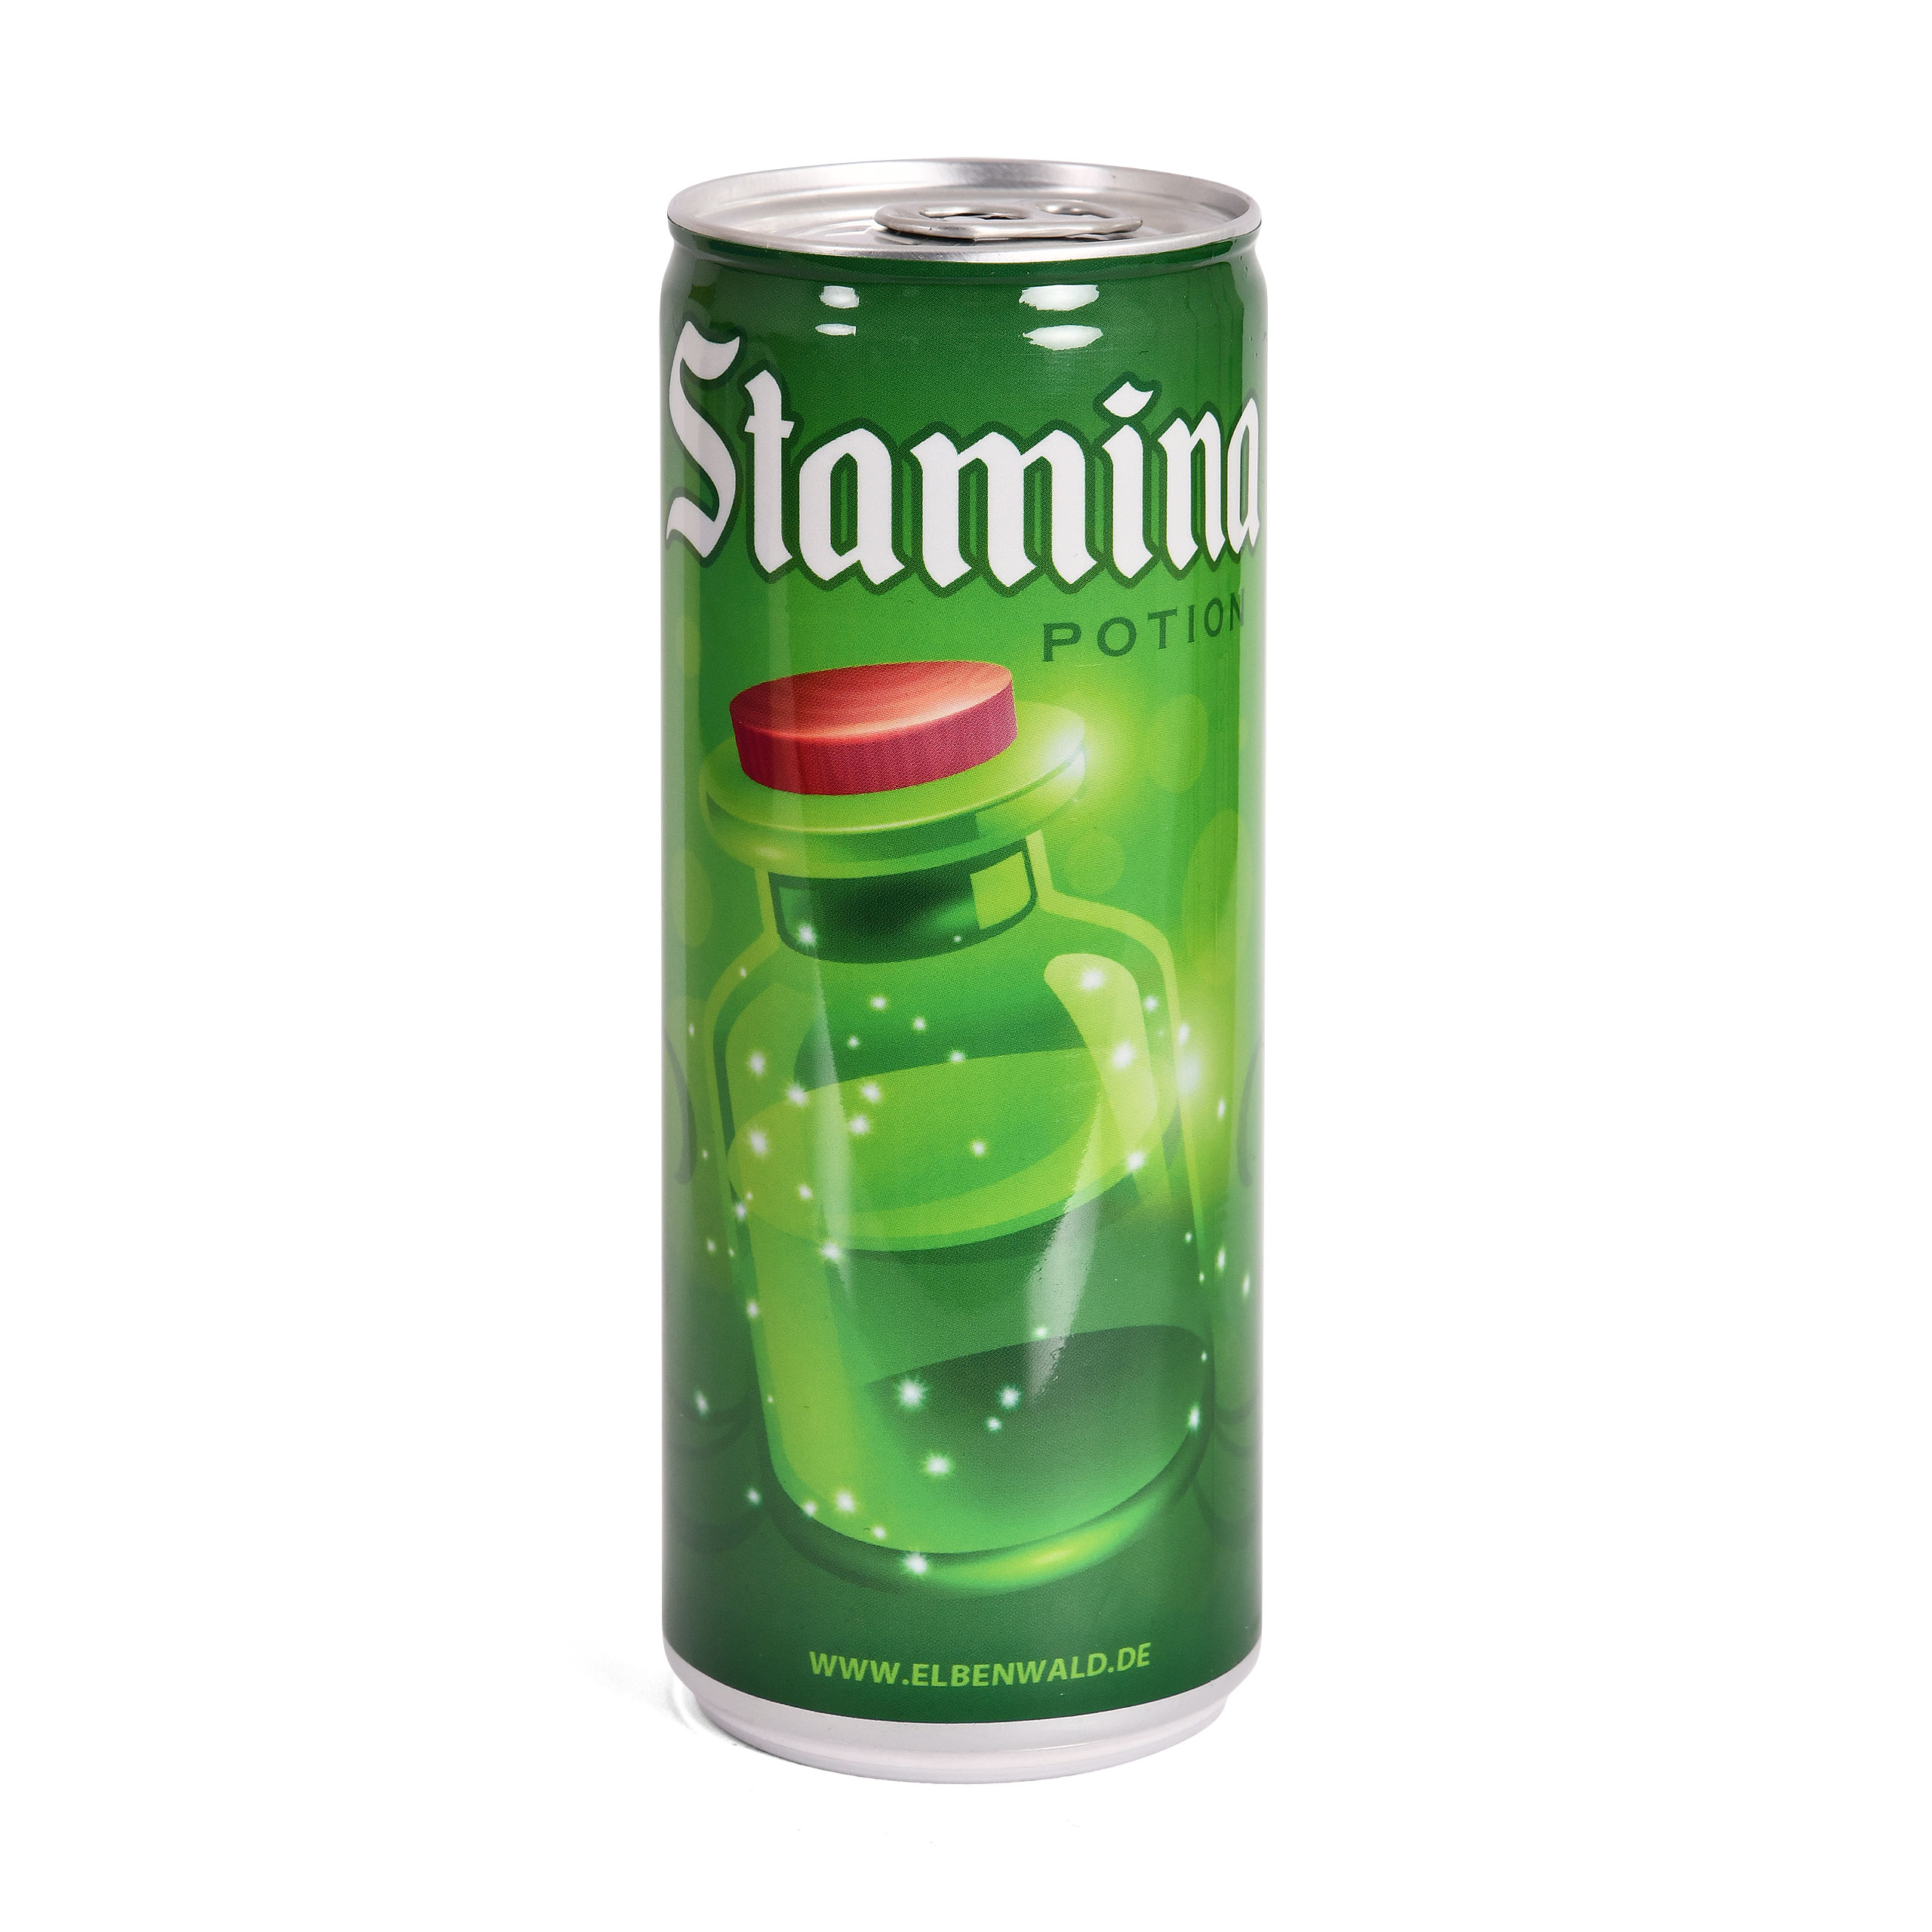 Stamina Potion Schorle Drink für Gaming Fans